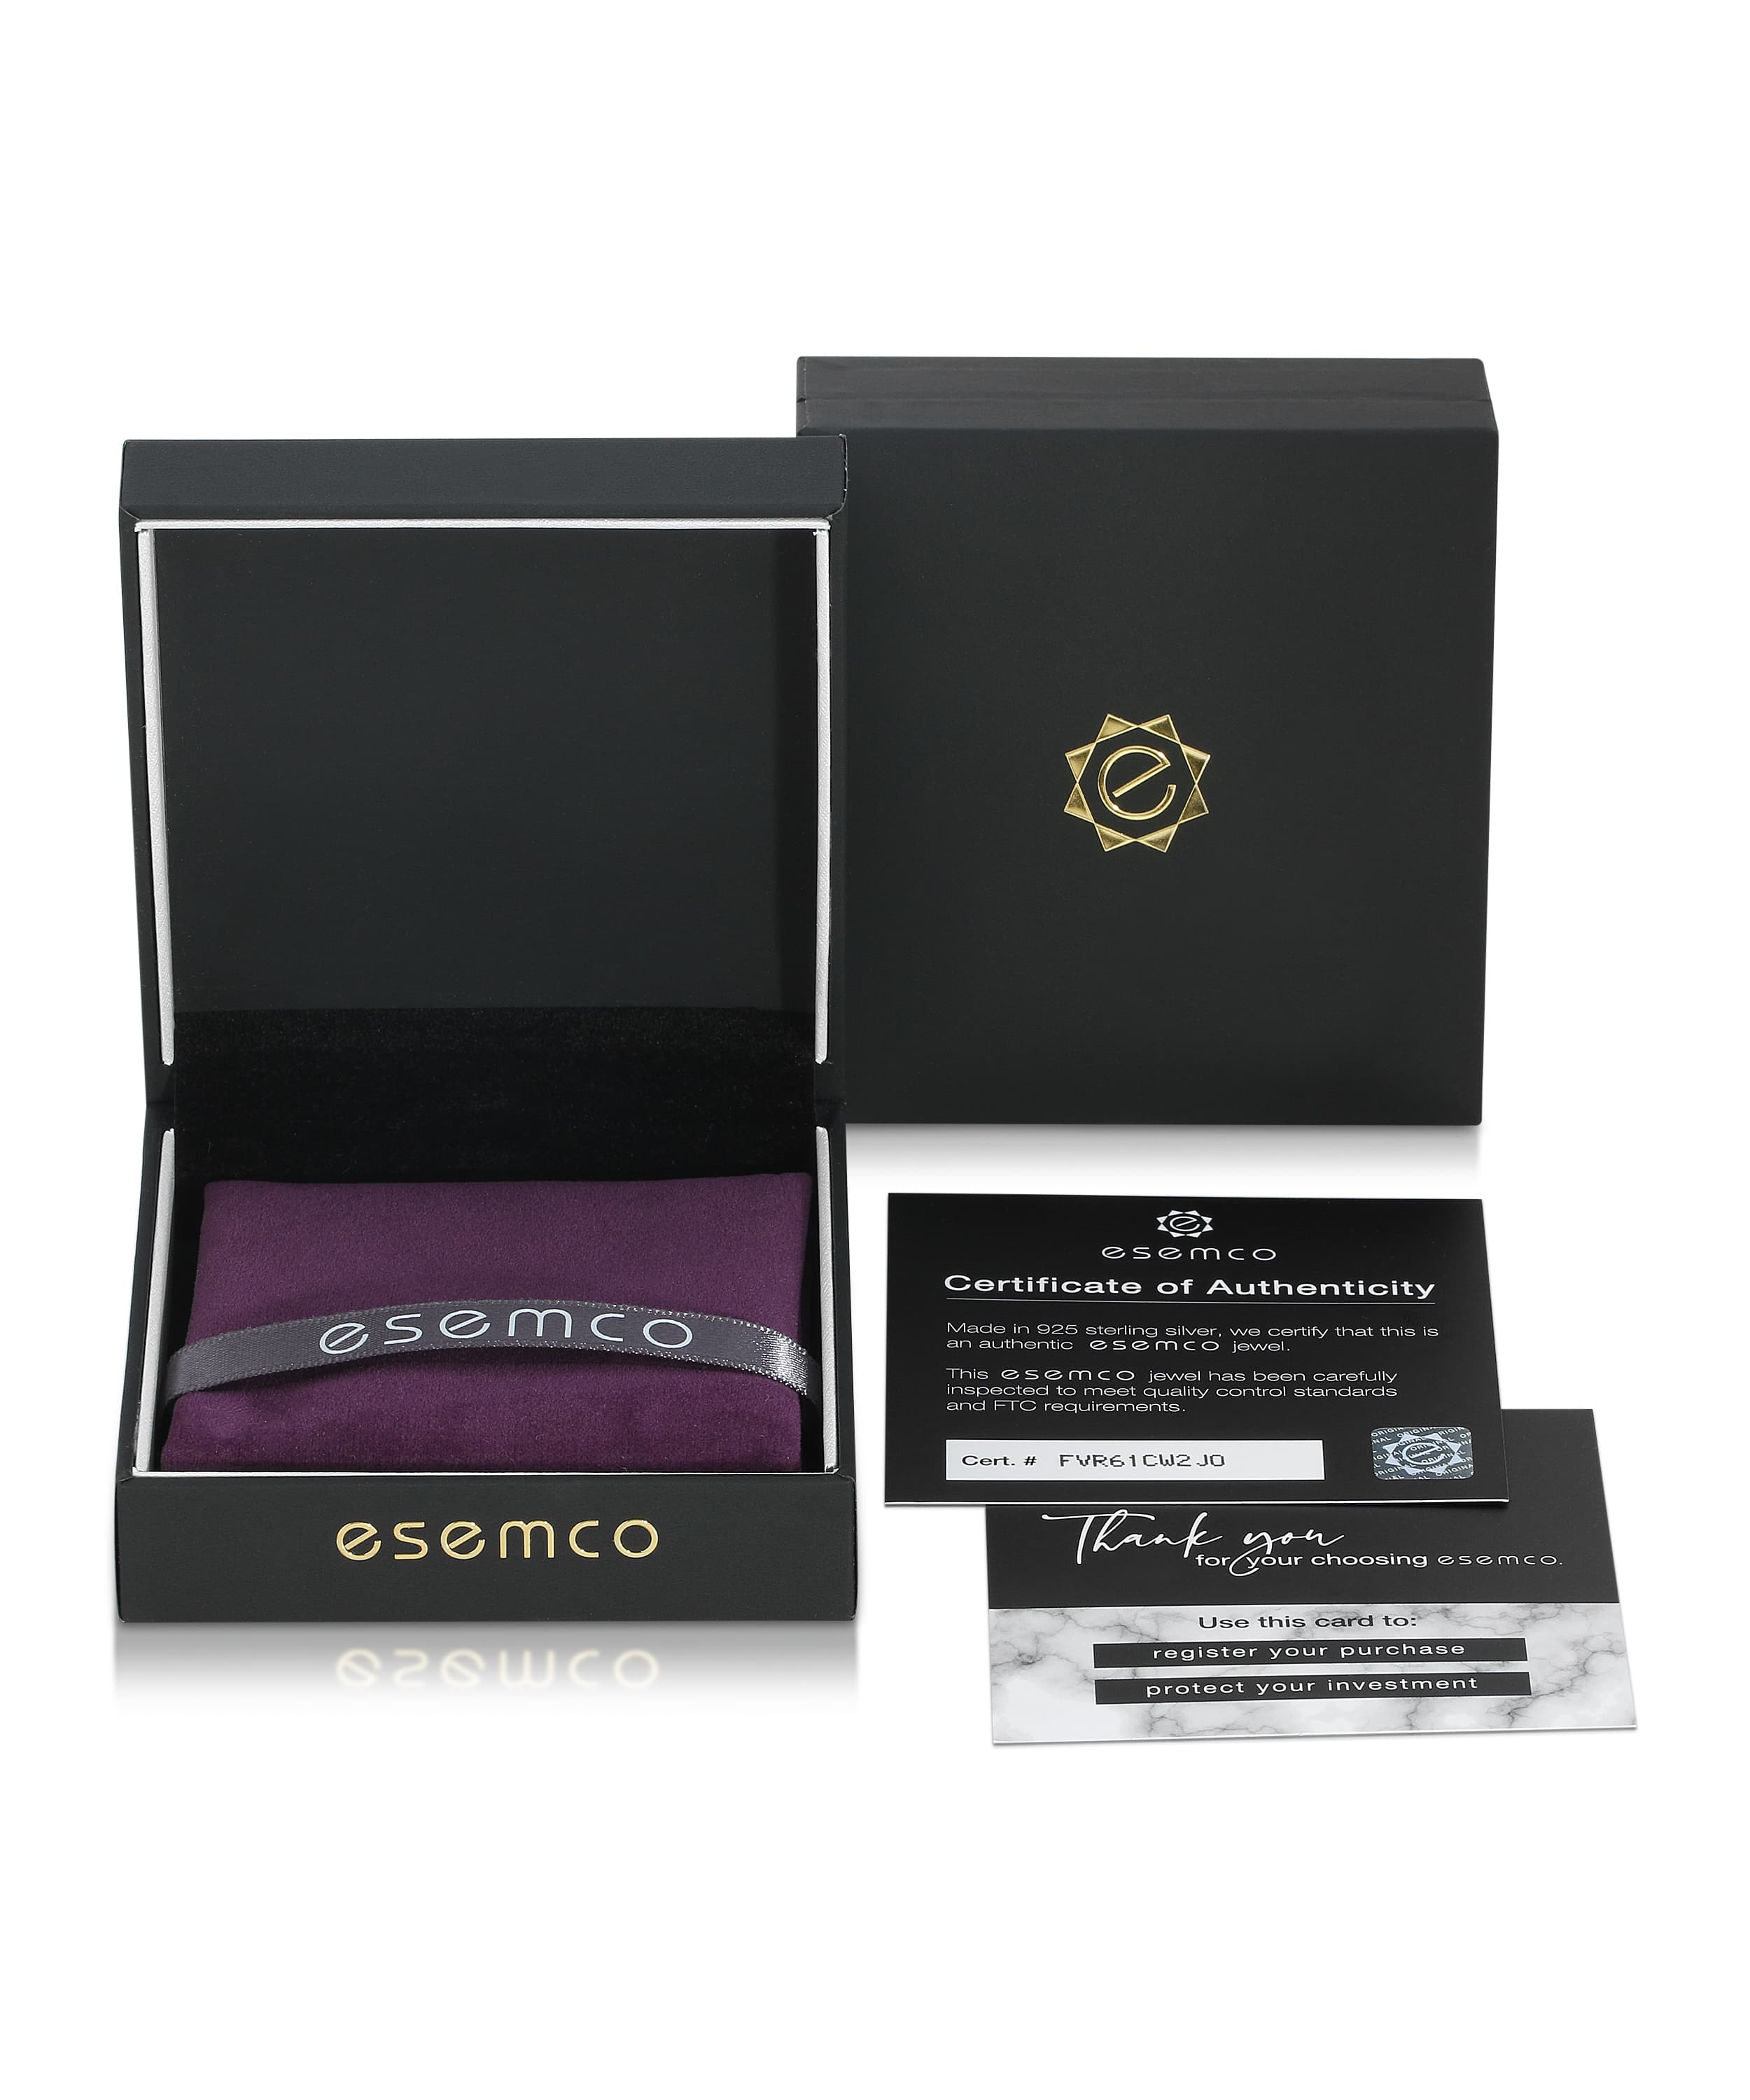 ESEMCO Diamond 18k White Gold Letter F Initial Open Ring View 4